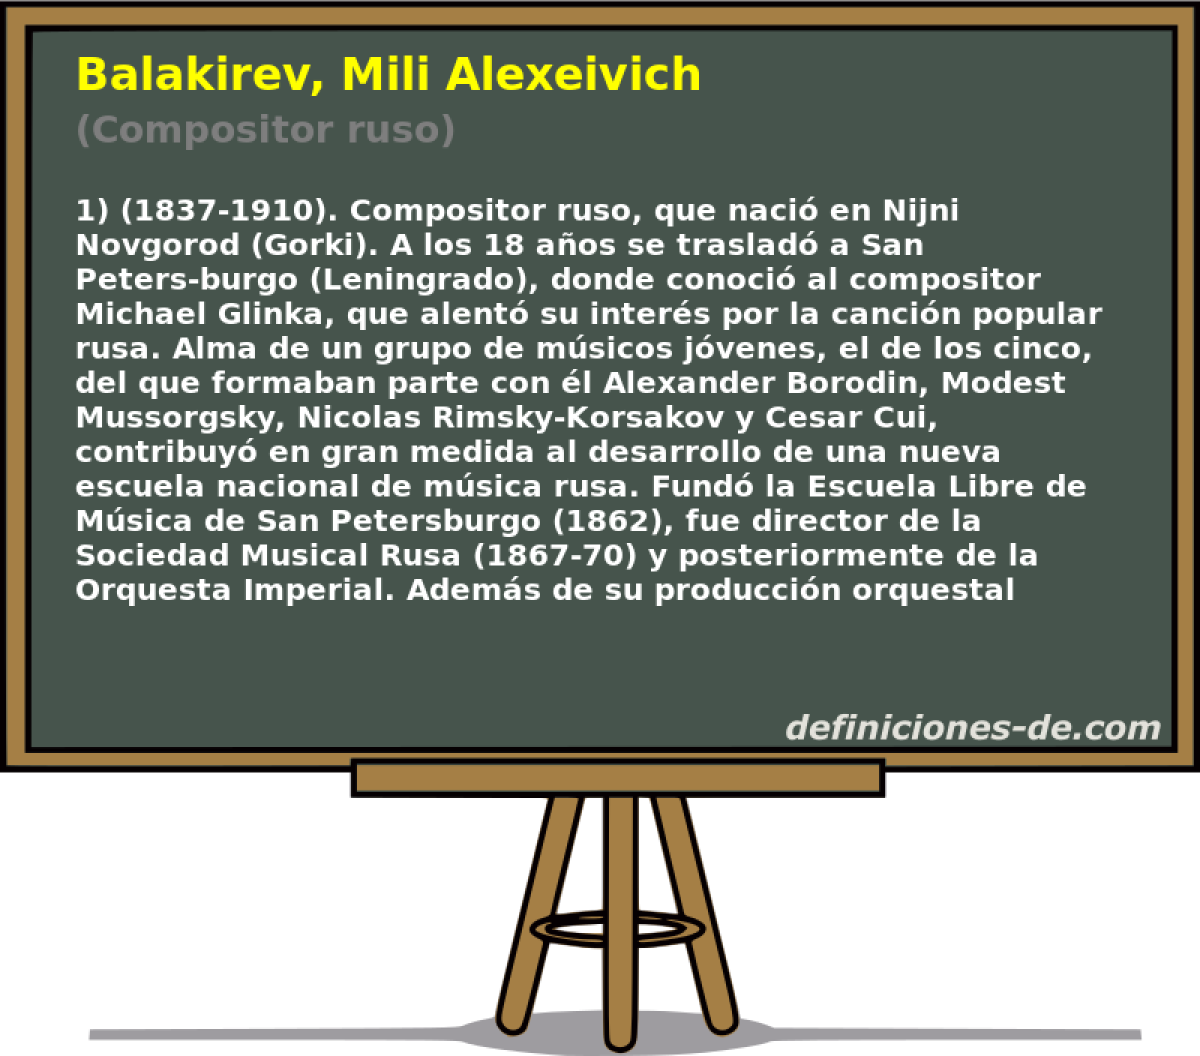 Balakirev, Mili Alexeivich (Compositor ruso)